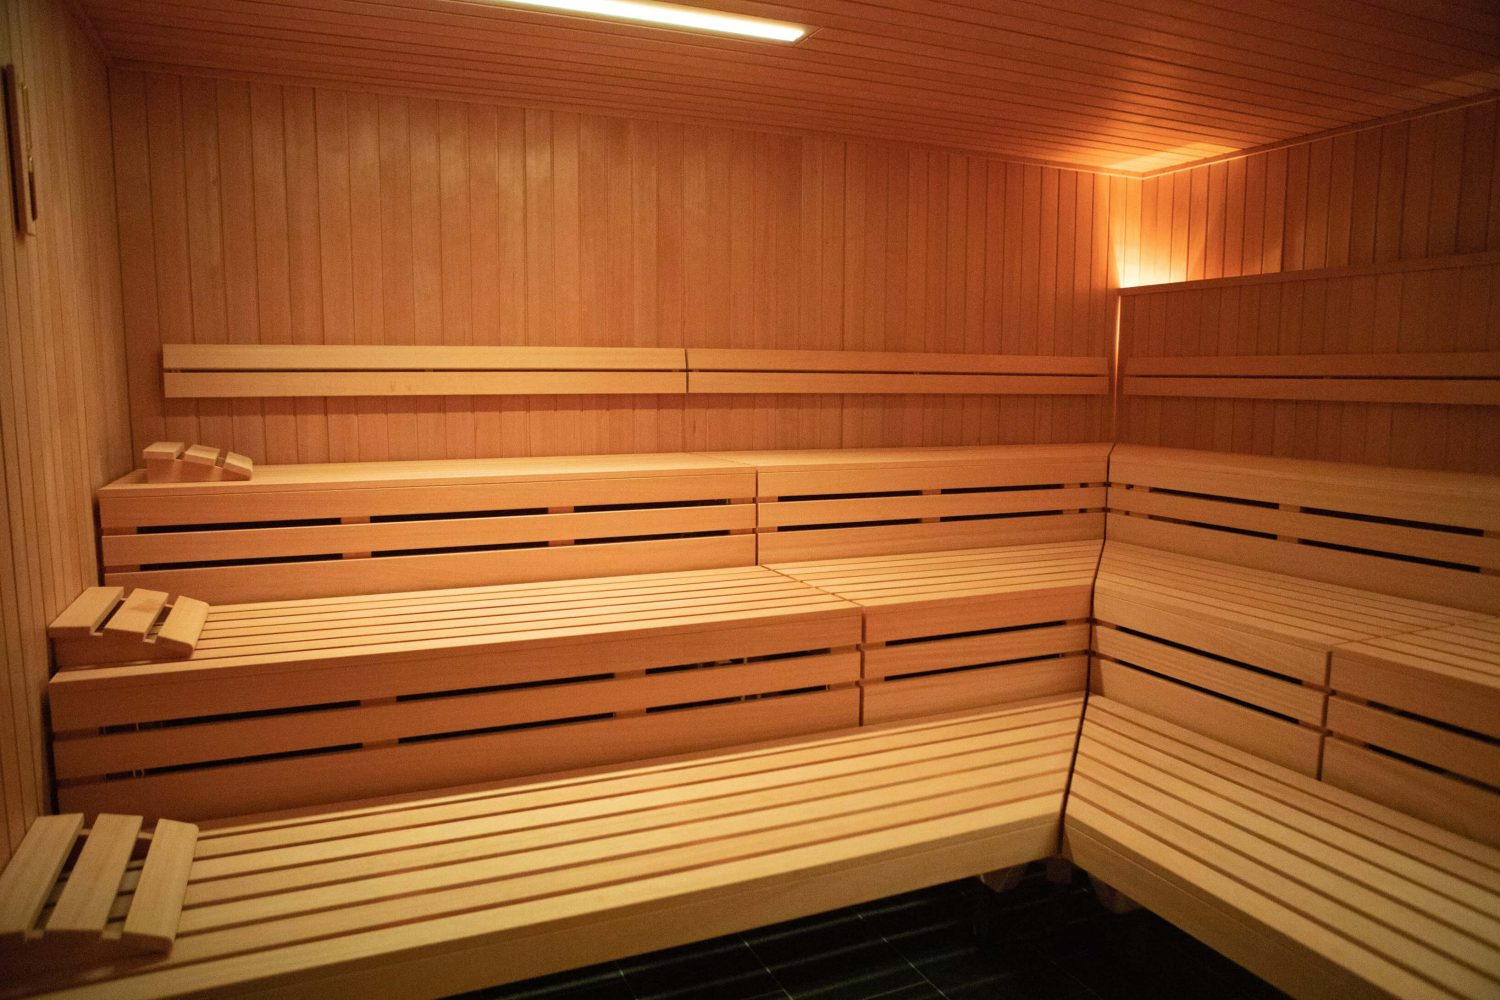 Eine hölzerne Sauna von innen